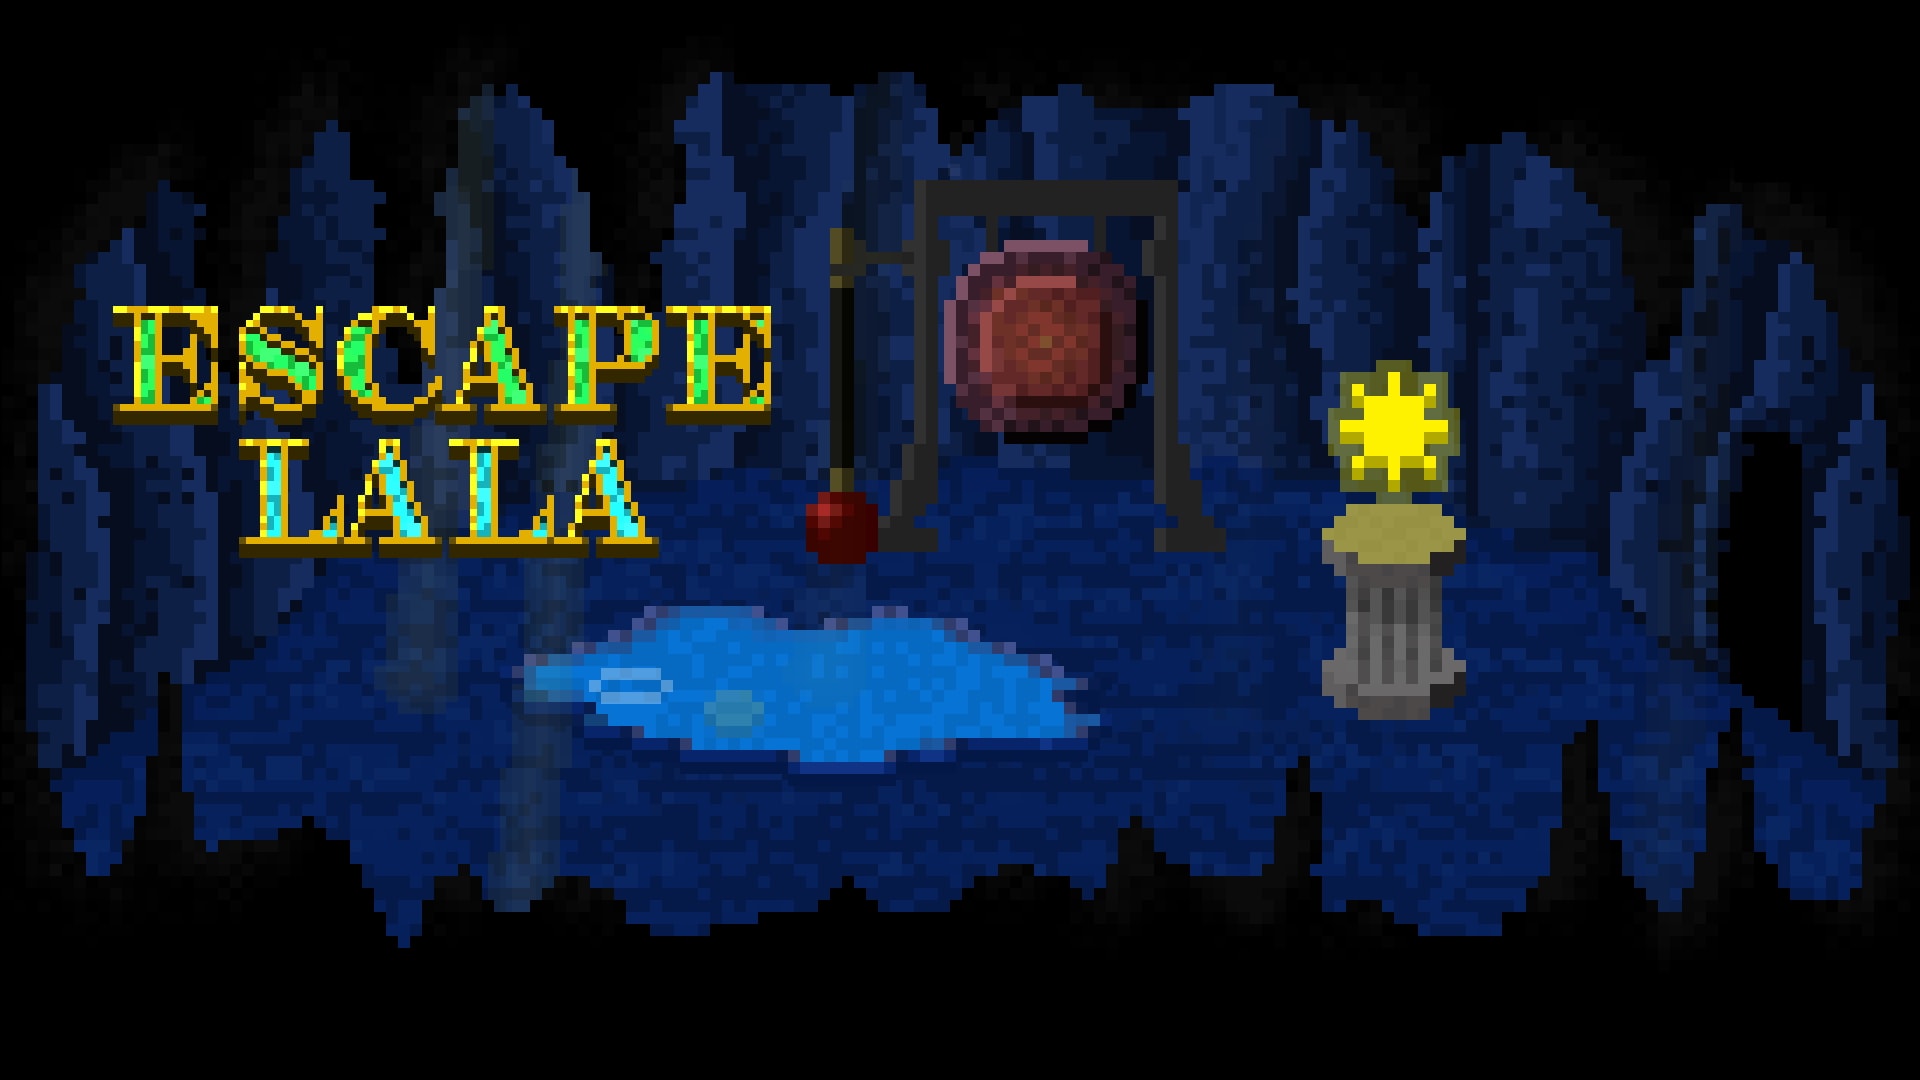 Escape Lala - Retro Point and Click Adventure